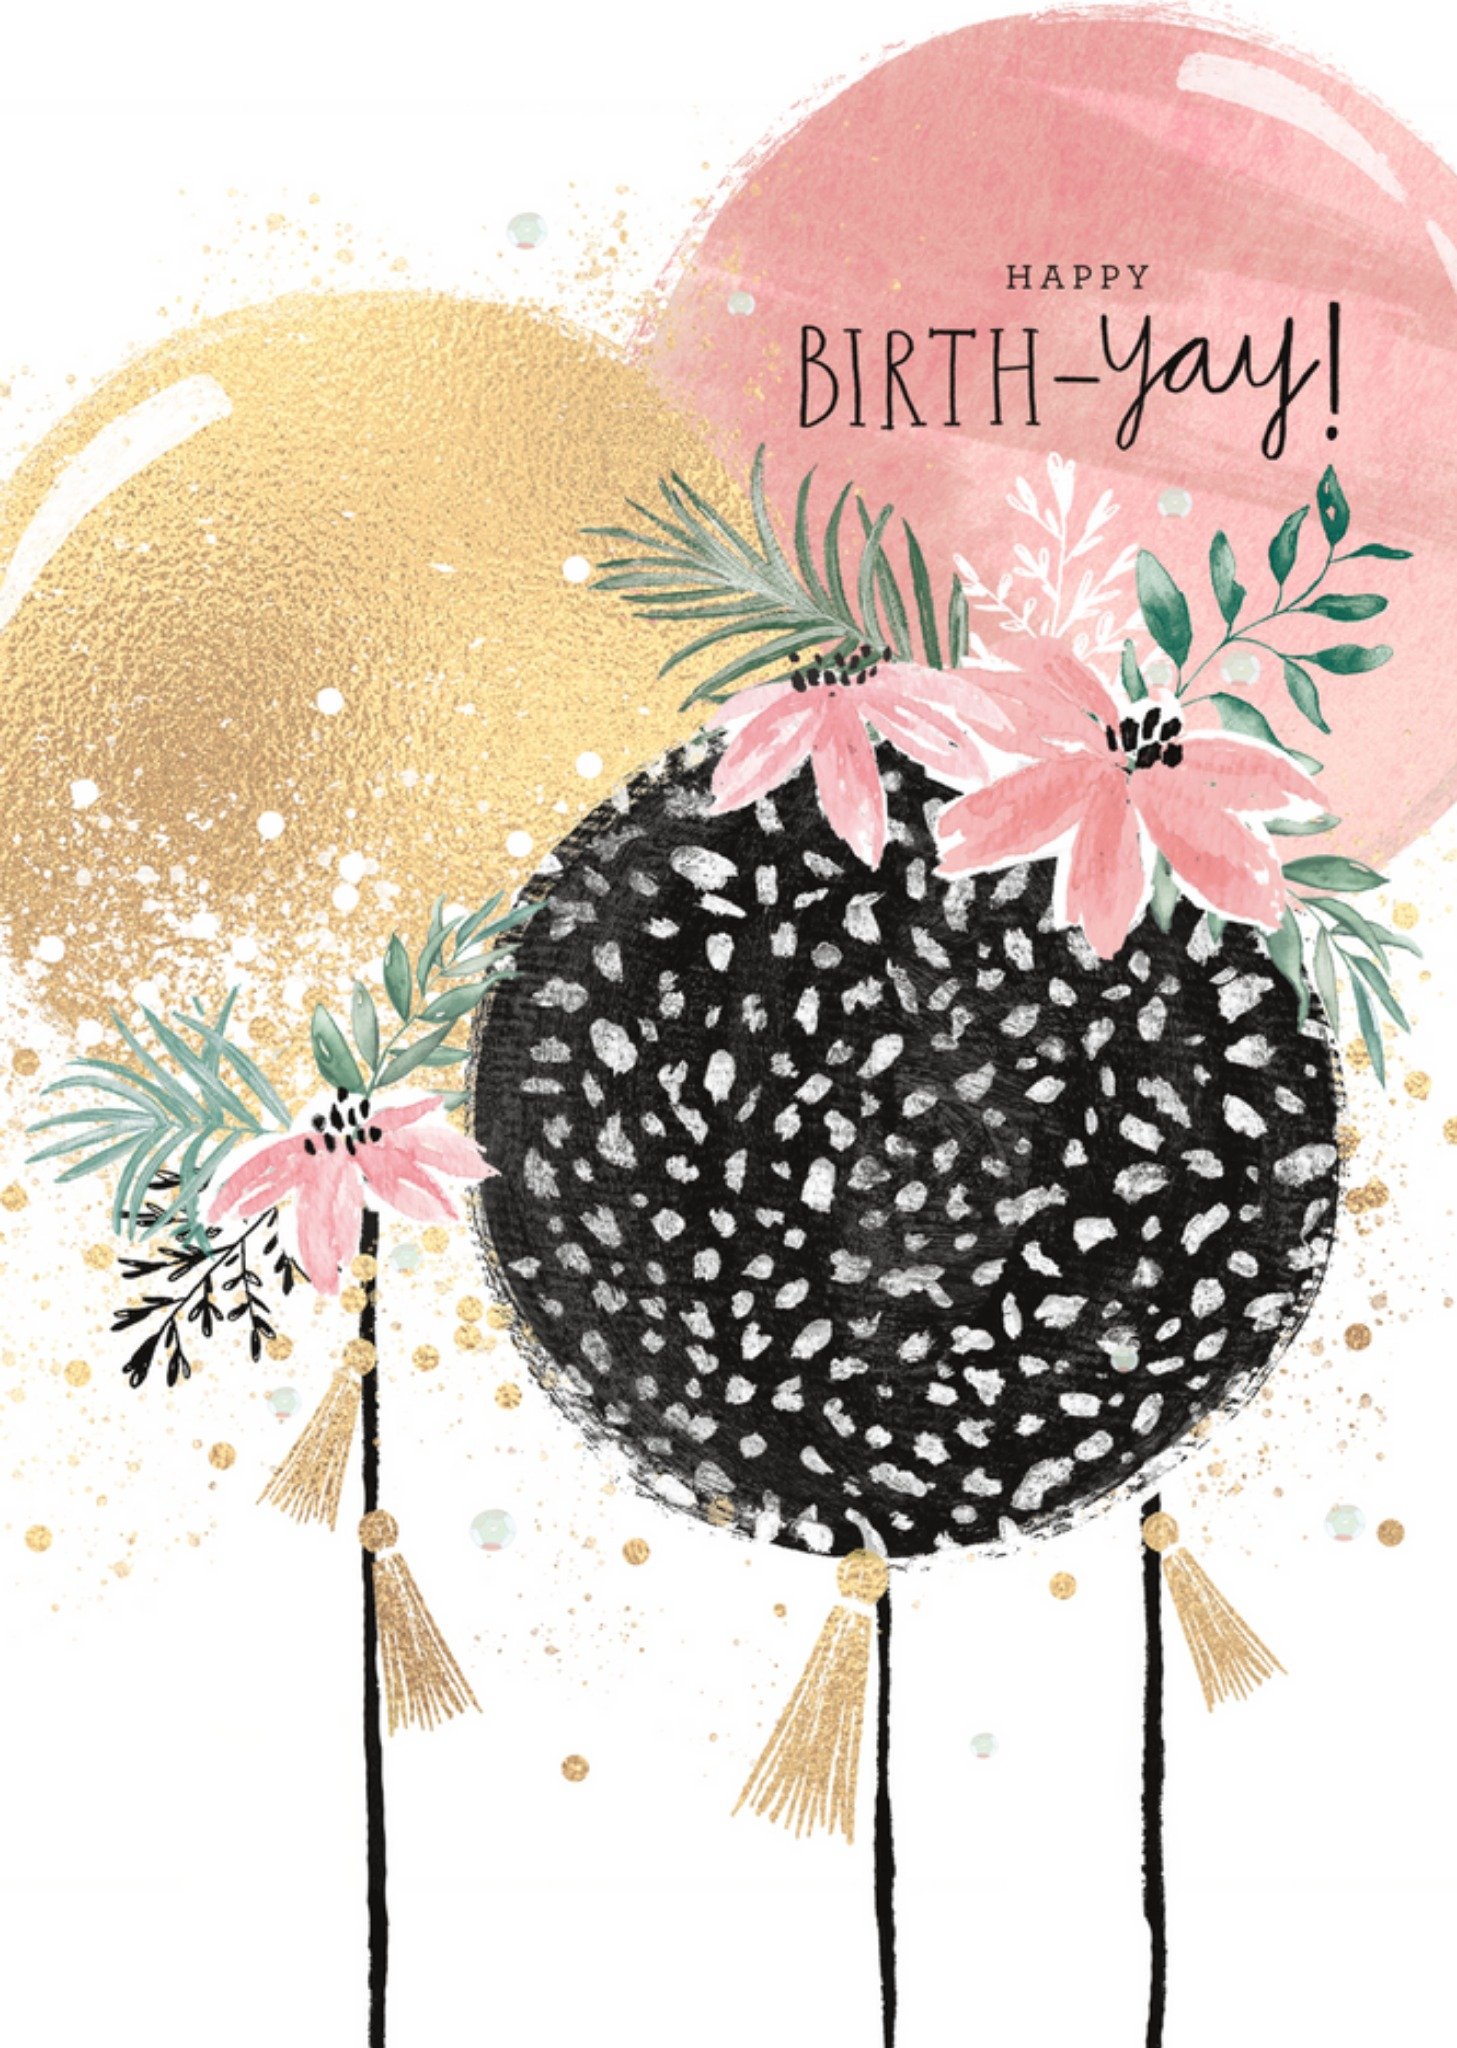 UK Greetings - Verjaardagskaart - Birth-yay!